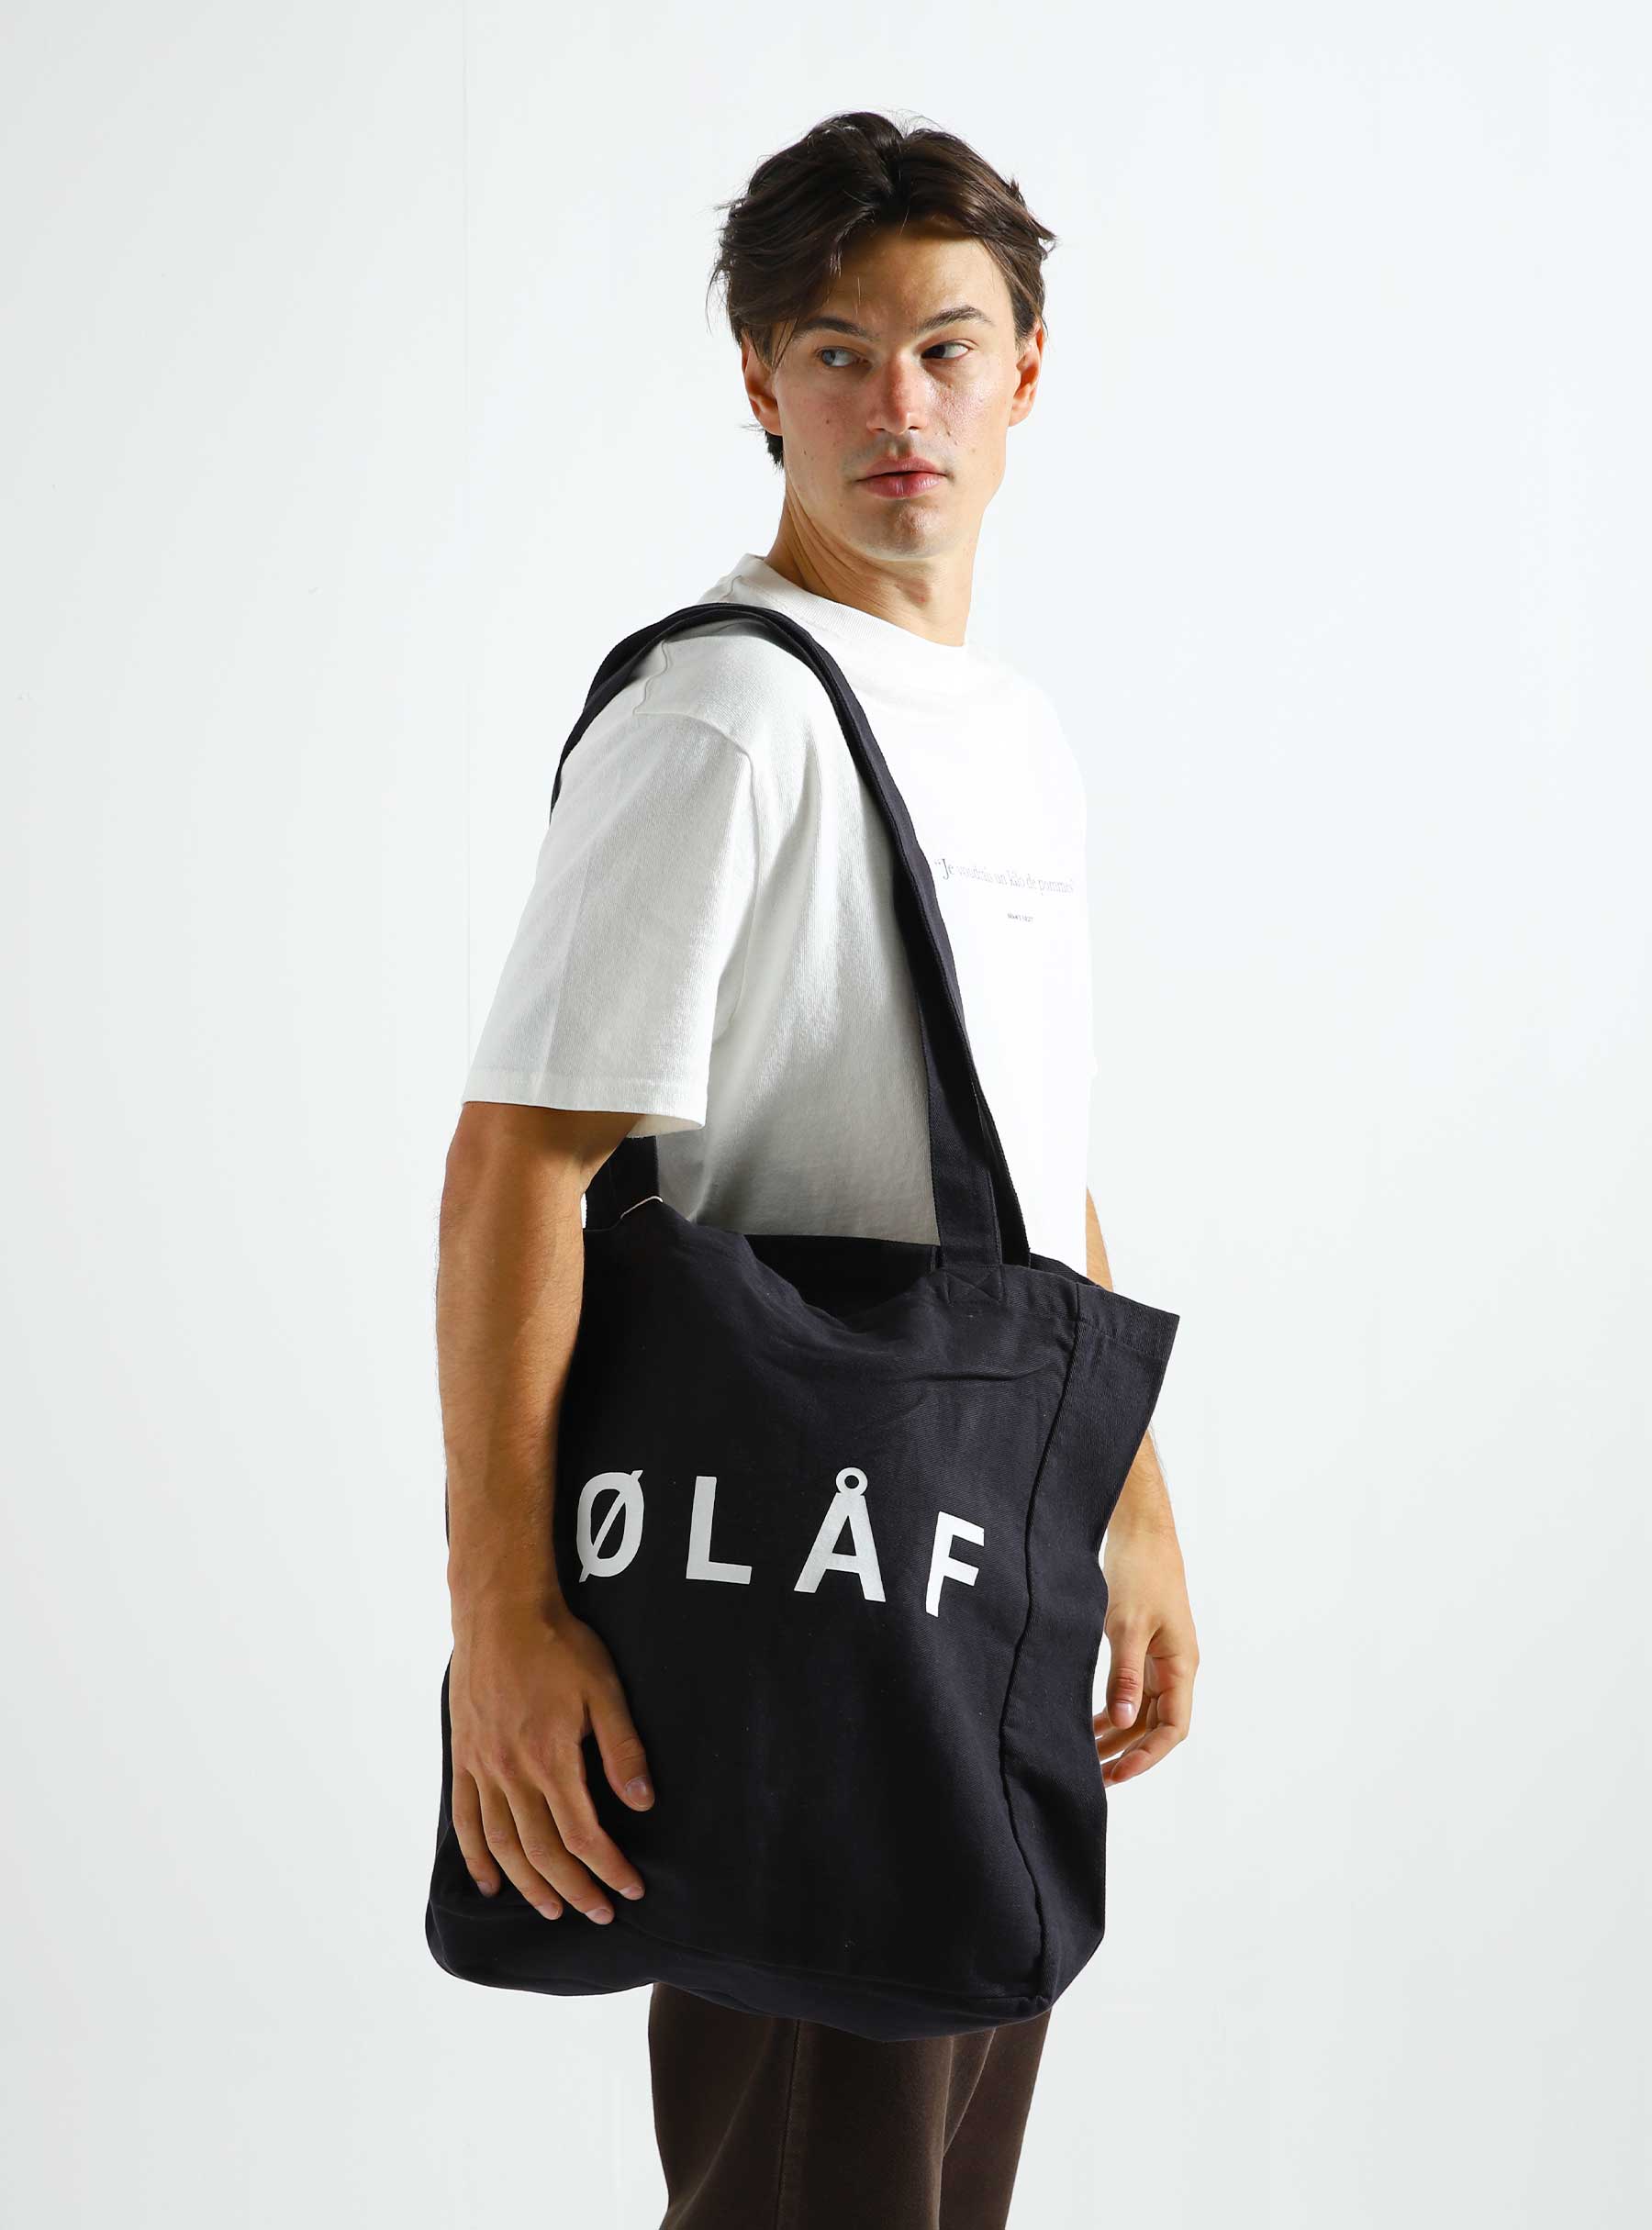 OLAF Tote Bag Black - Freshcotton